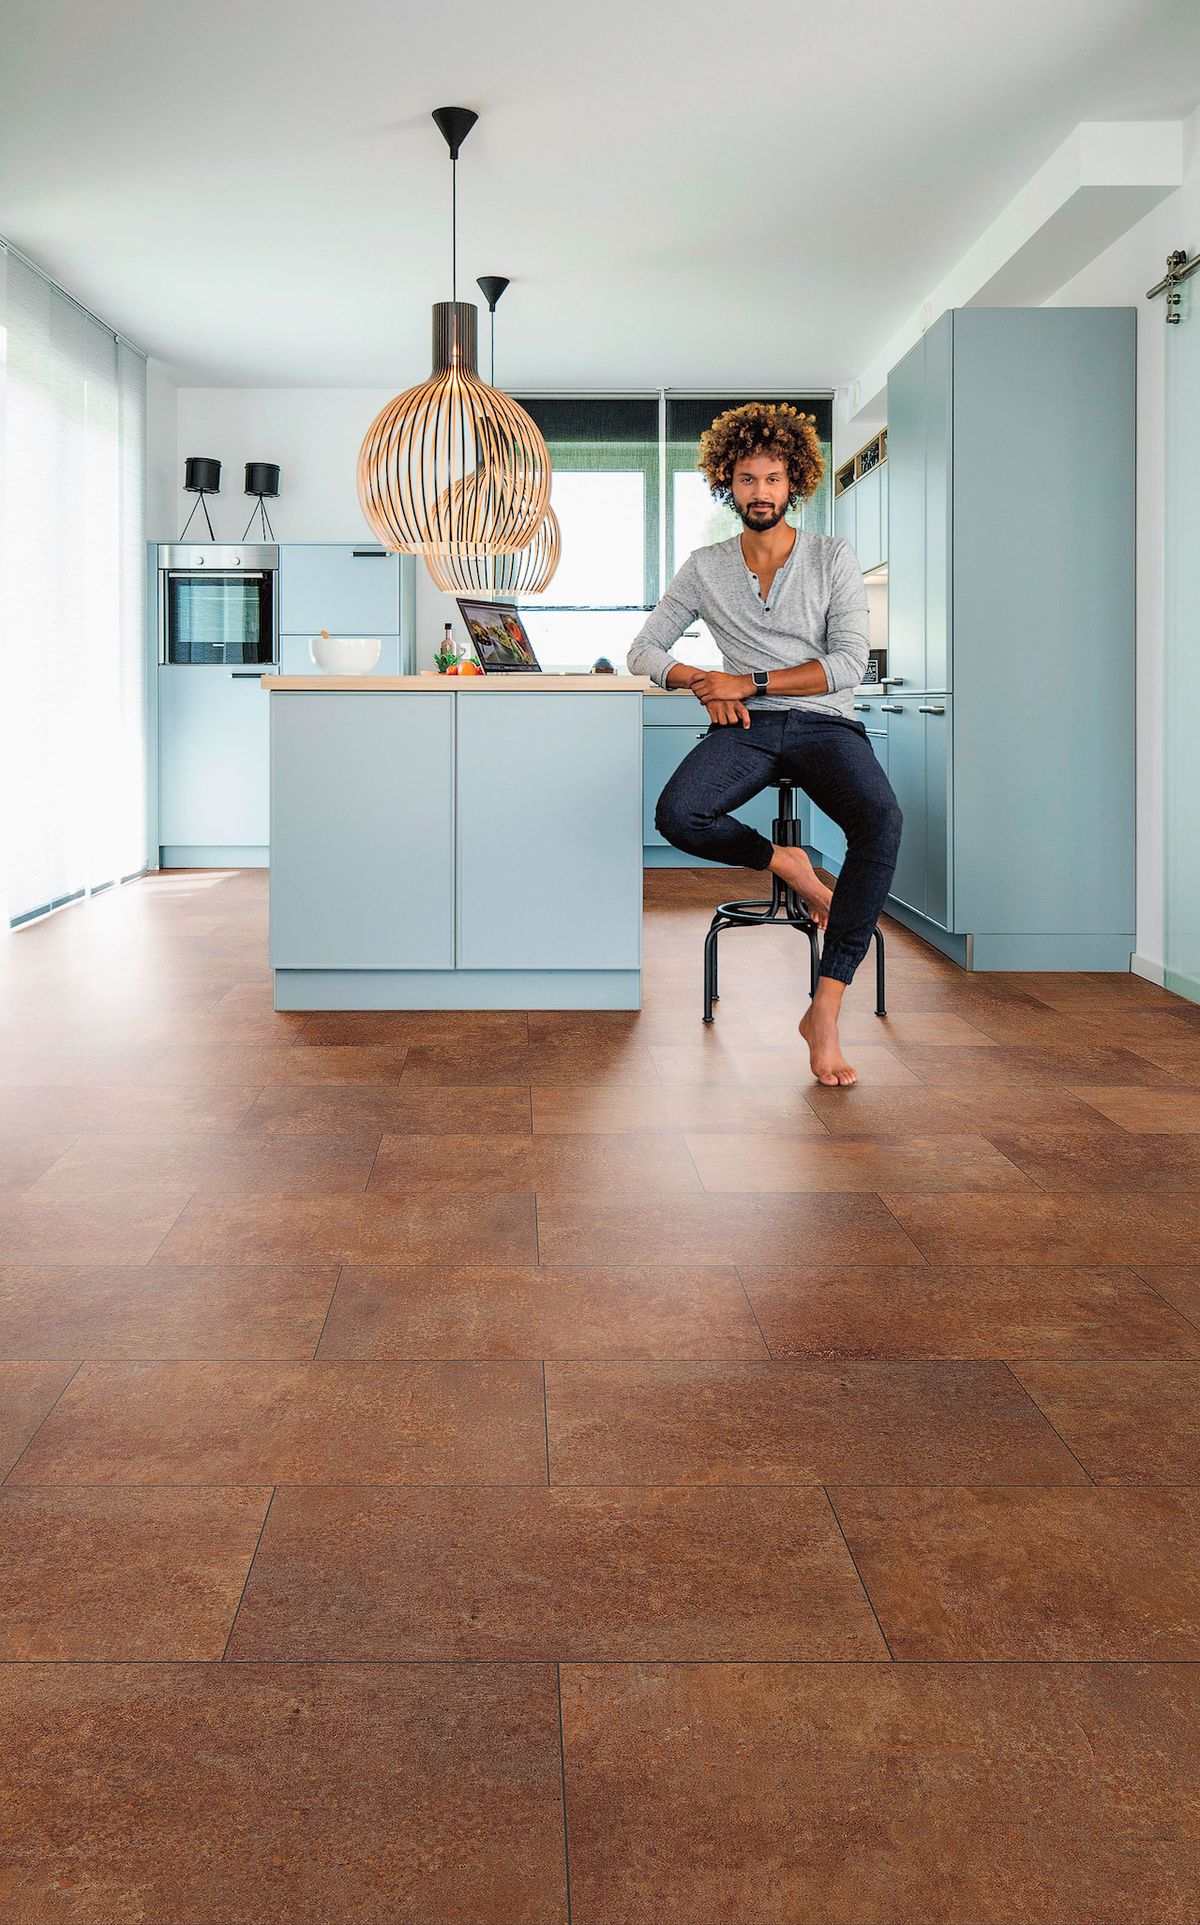 Vinylová podlaha je voděodolná, odolná vůči poškrábání, měkká a příjemná pro bosou nohu.